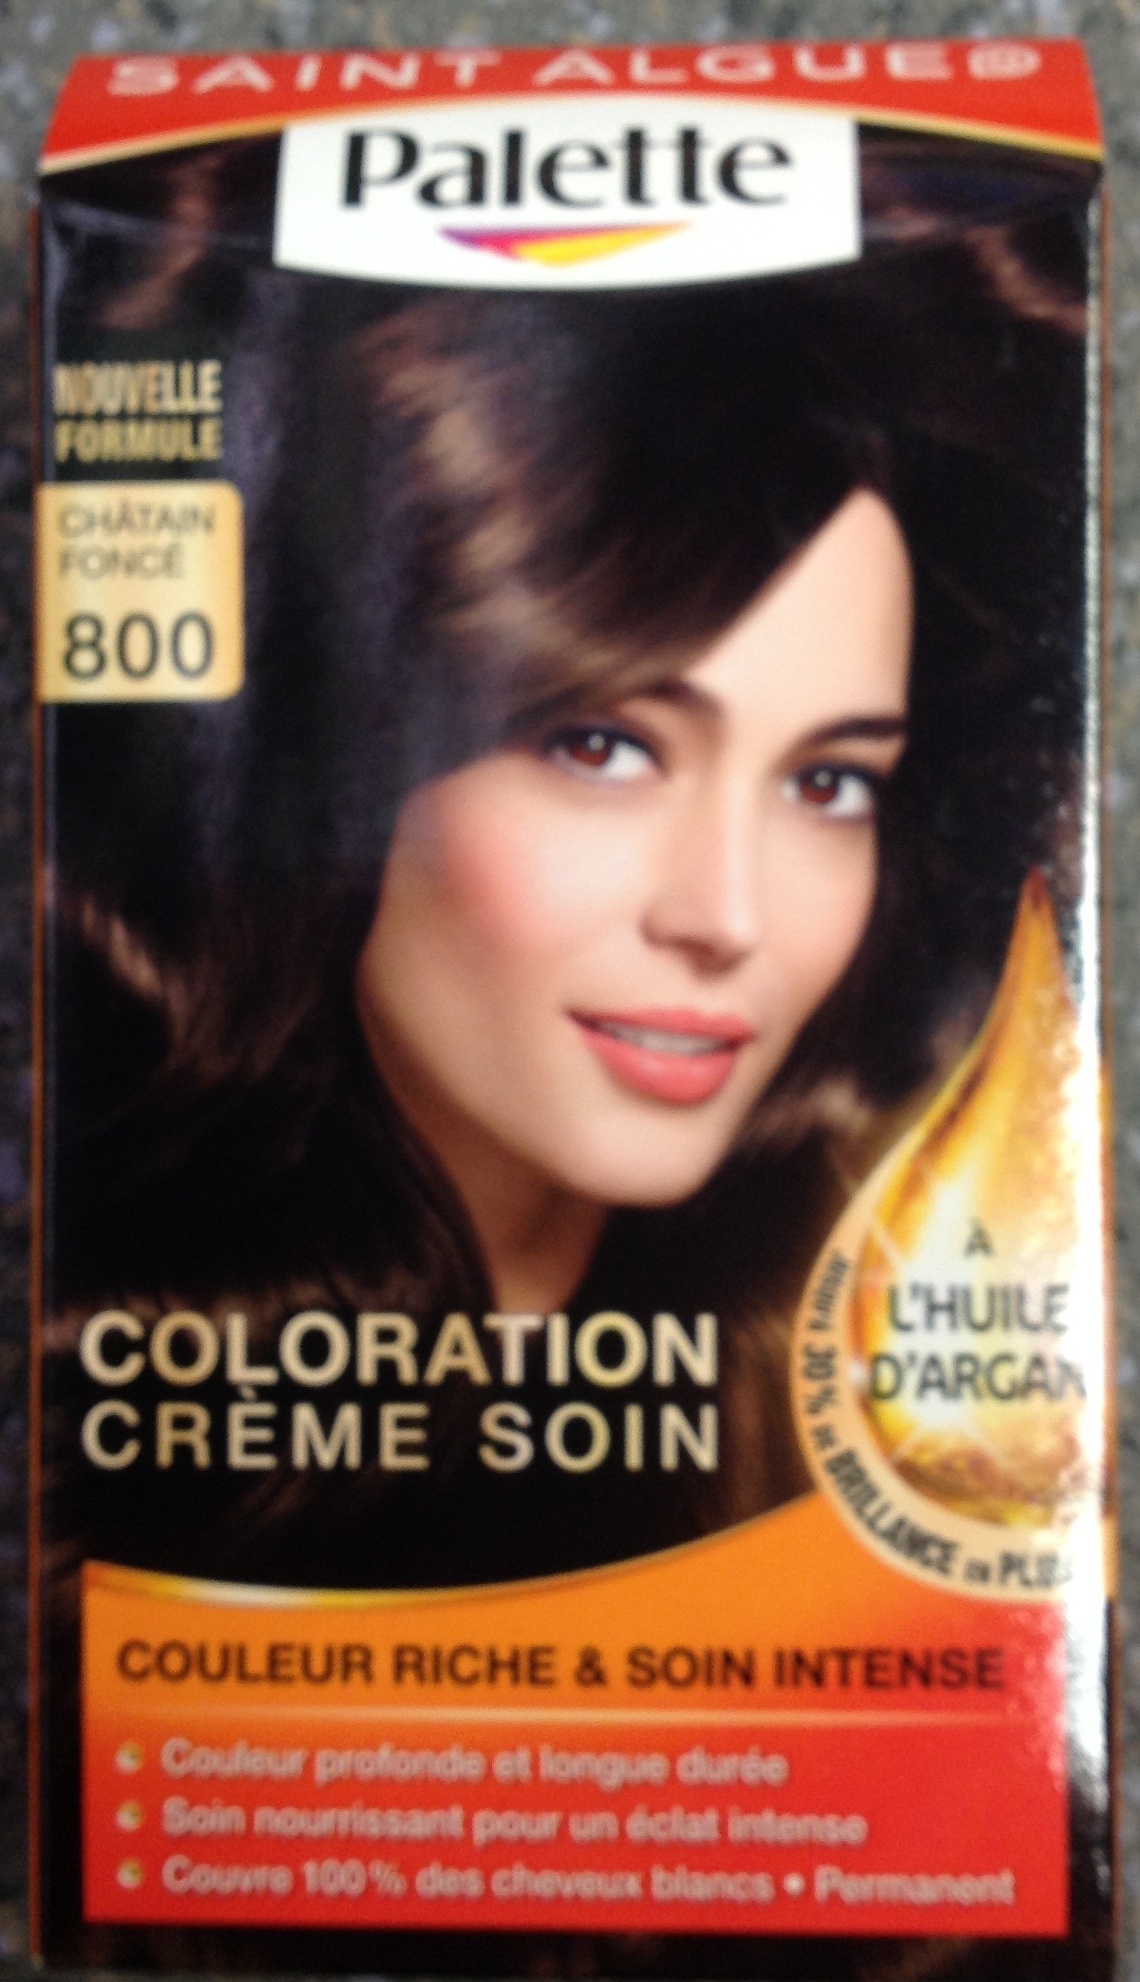 Coloration Crème Soin à l'huile d'Argan Châtain foncé 800 - Product - fr